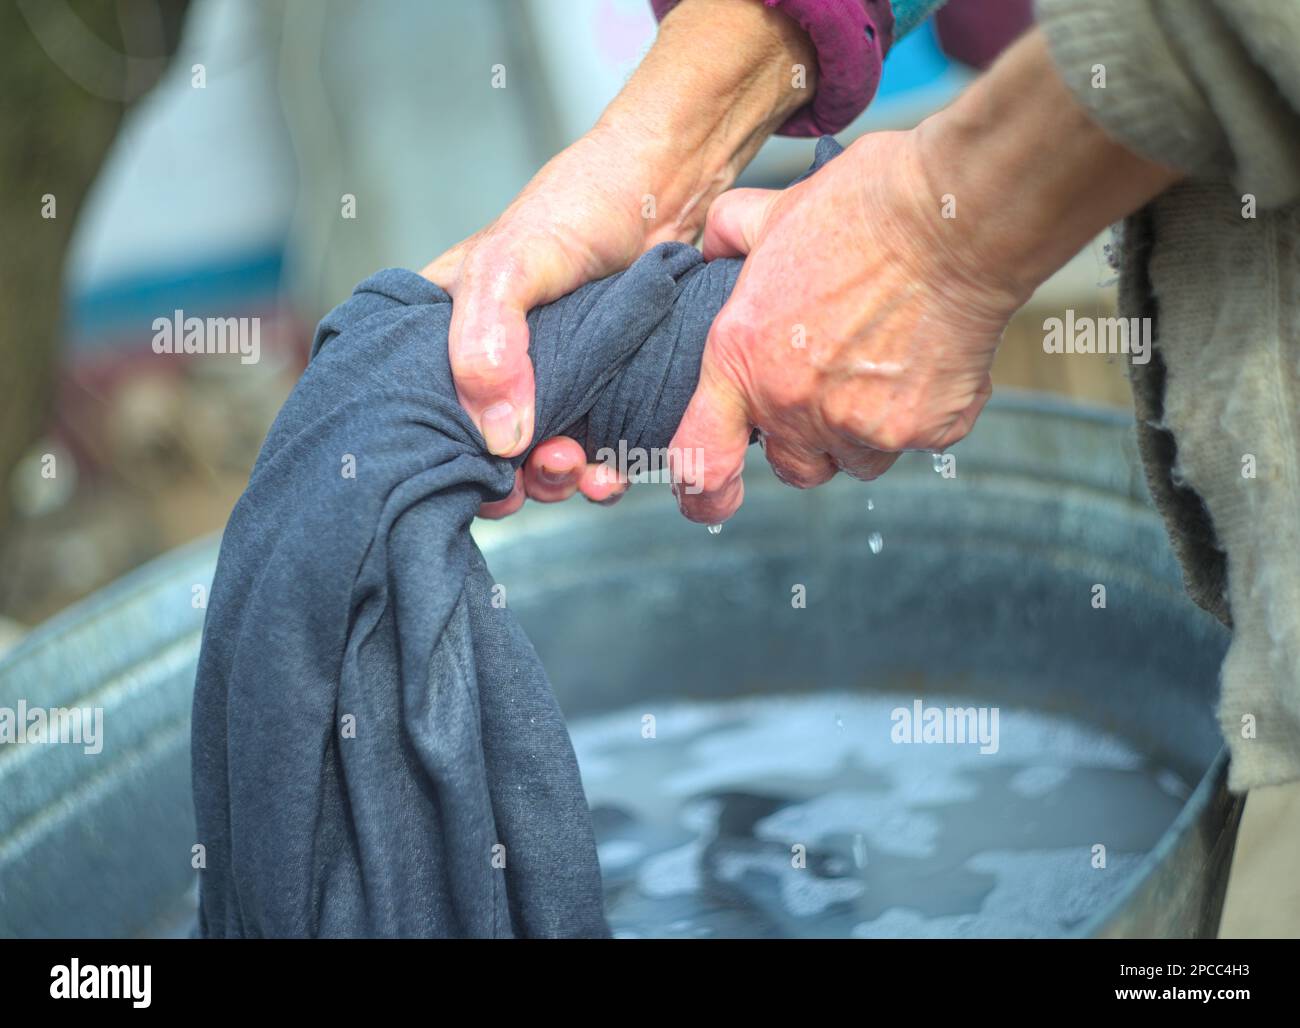 Frau, die nach dem Waschen Kleider auswringt Stockfoto